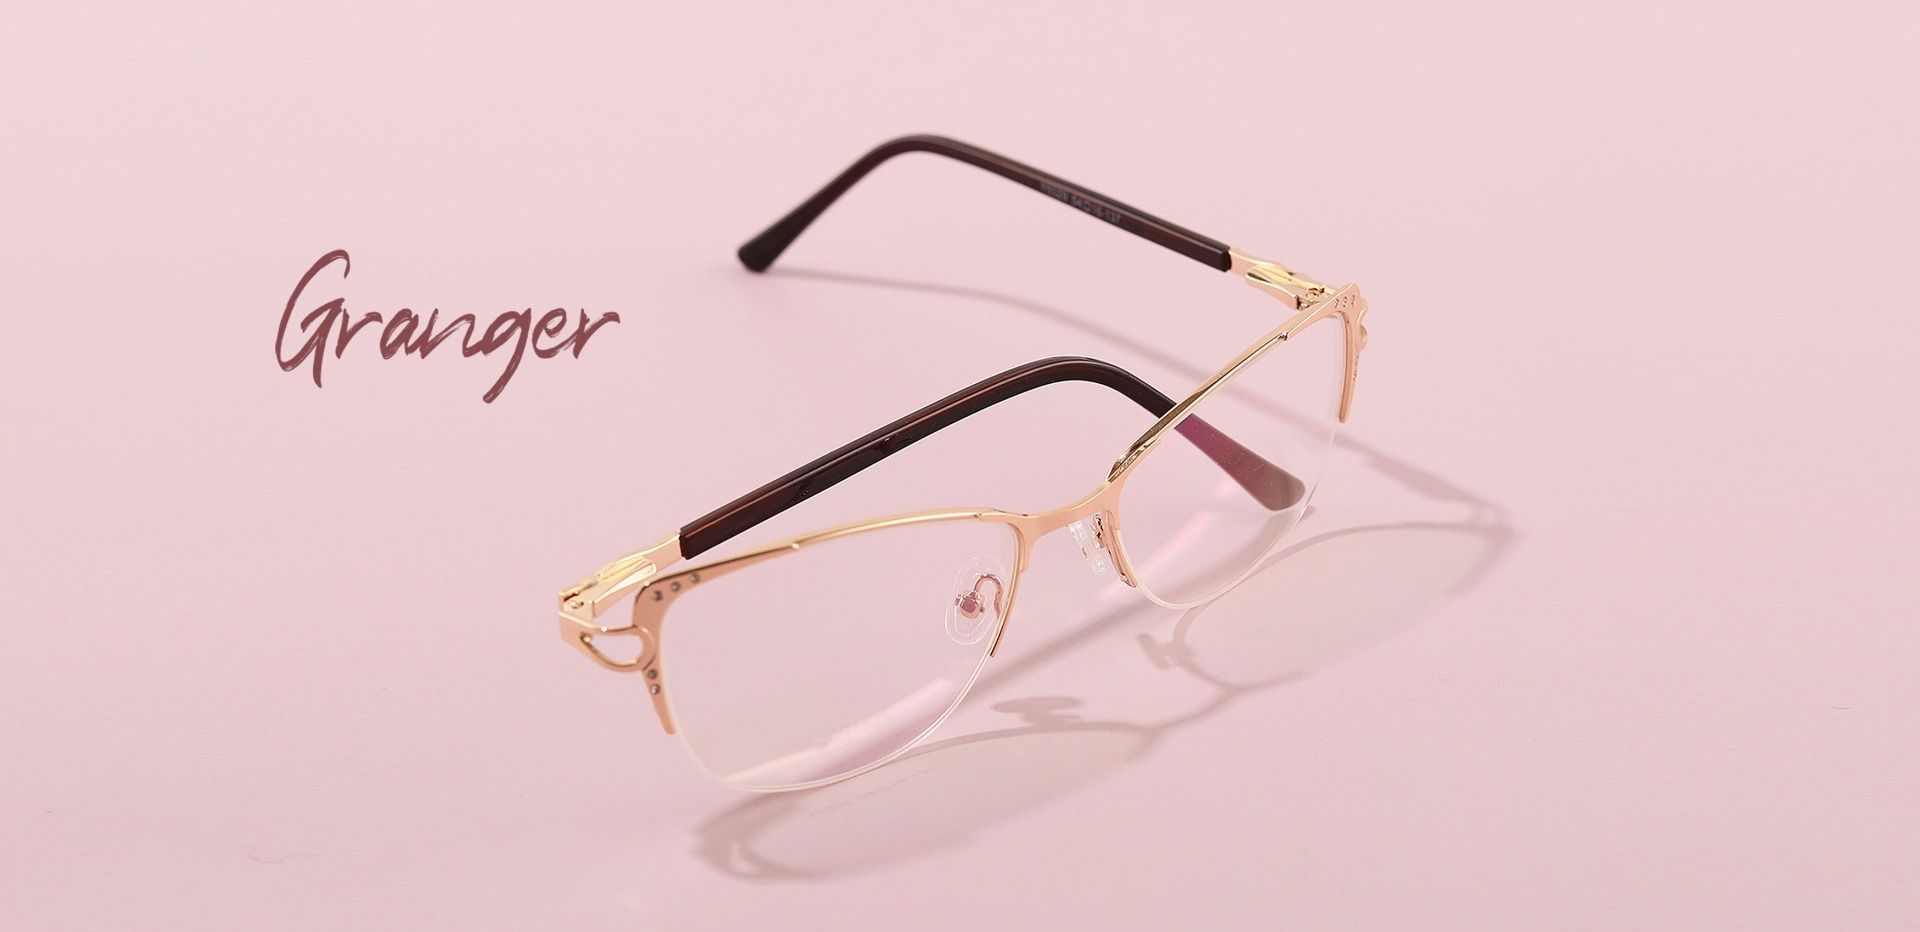 Granger Cat Eye Reading Glasses - Gold